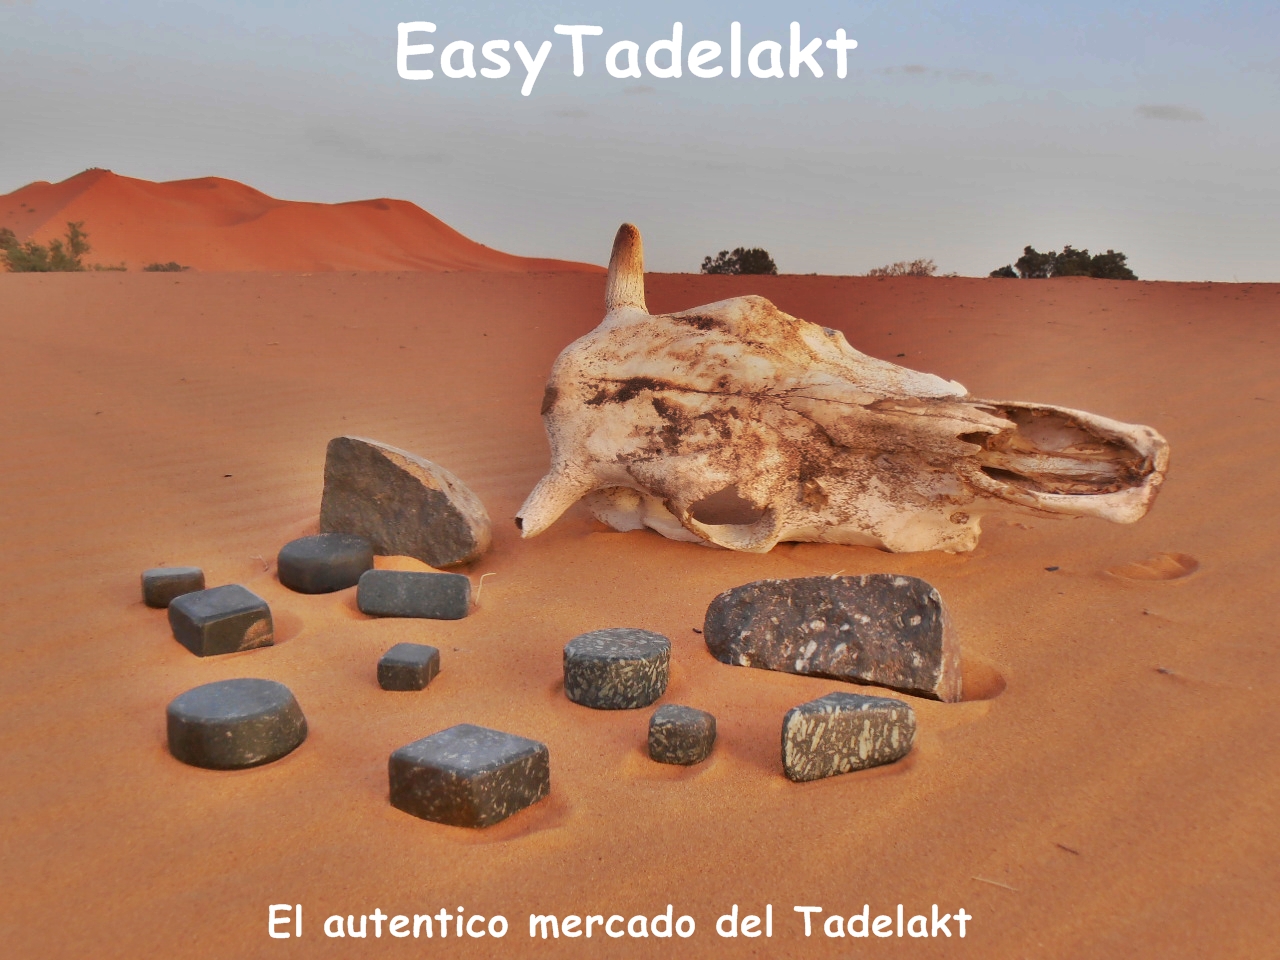 Piedra autentica marroquí para la tecnica del Tadelakt de EasyTadelakt